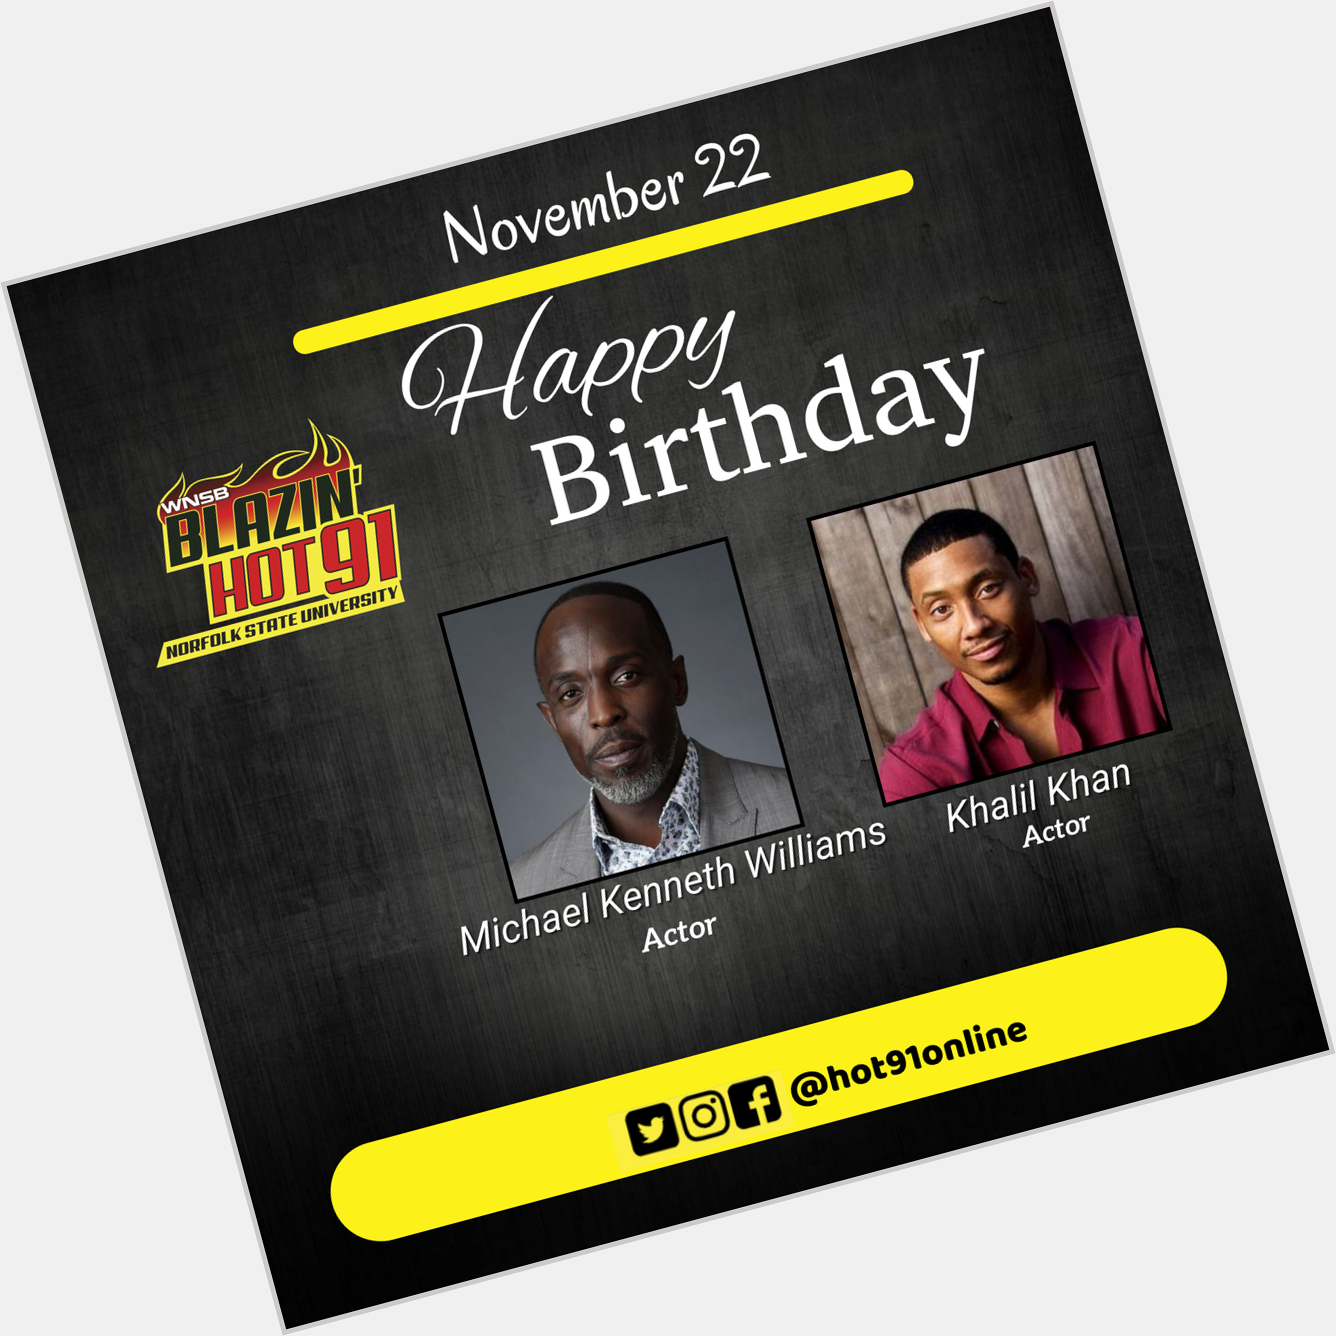 Happy Blazin\ Hot Birthday to Michael Kenneth Williams & Khalil Khan  